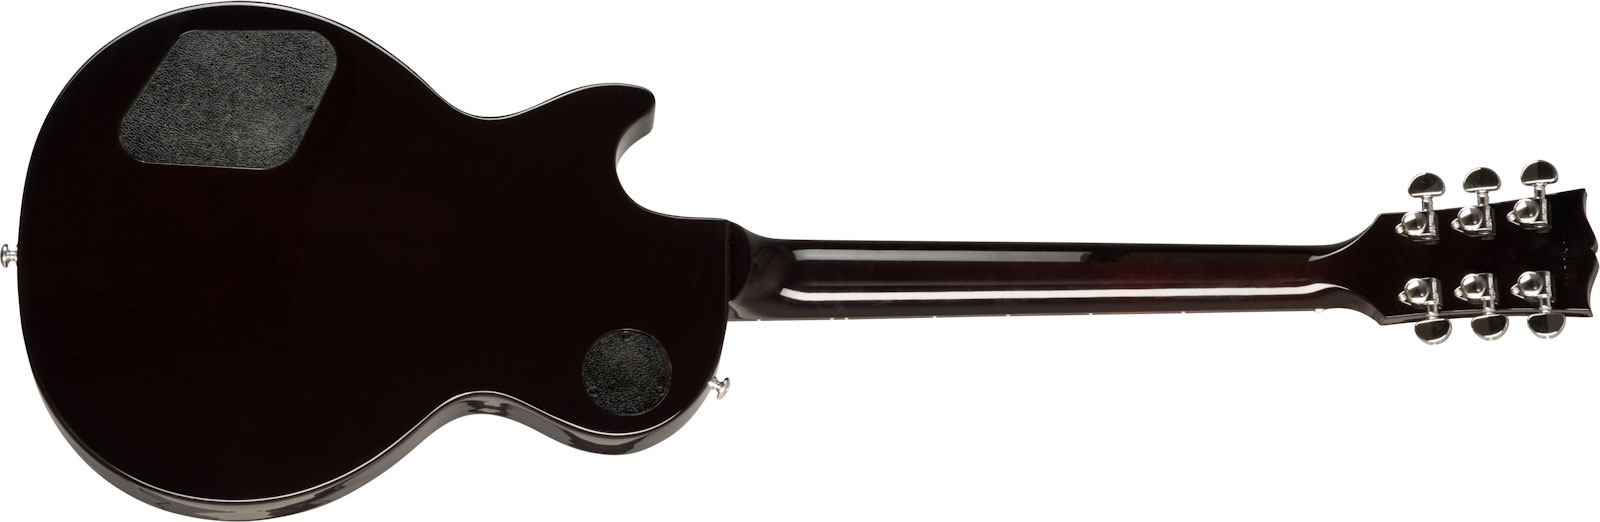 Gibson Les Paul Studio Modern 2h Ht Rw - Smokehouse Burst - Guitare Électrique Single Cut - Variation 1